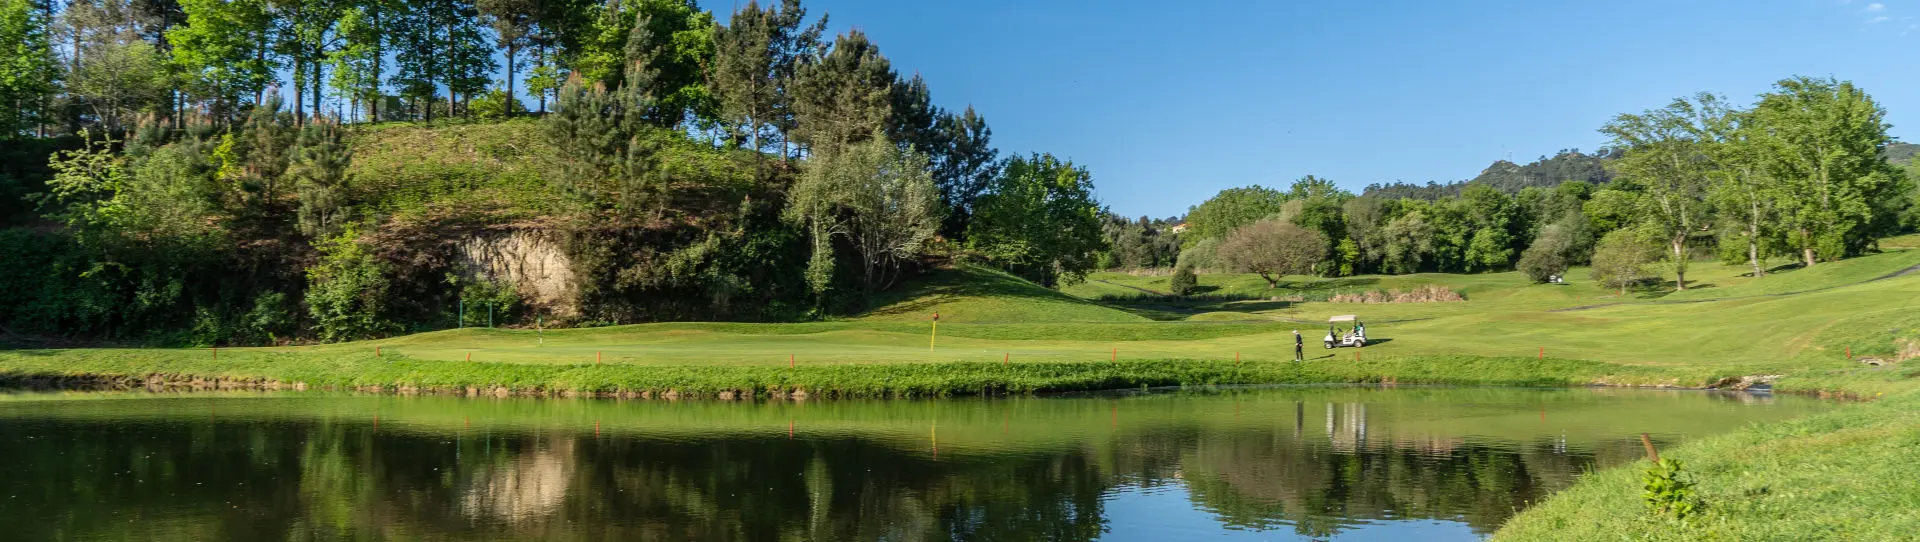 Portugal golf courses - Amarante - Photo 2